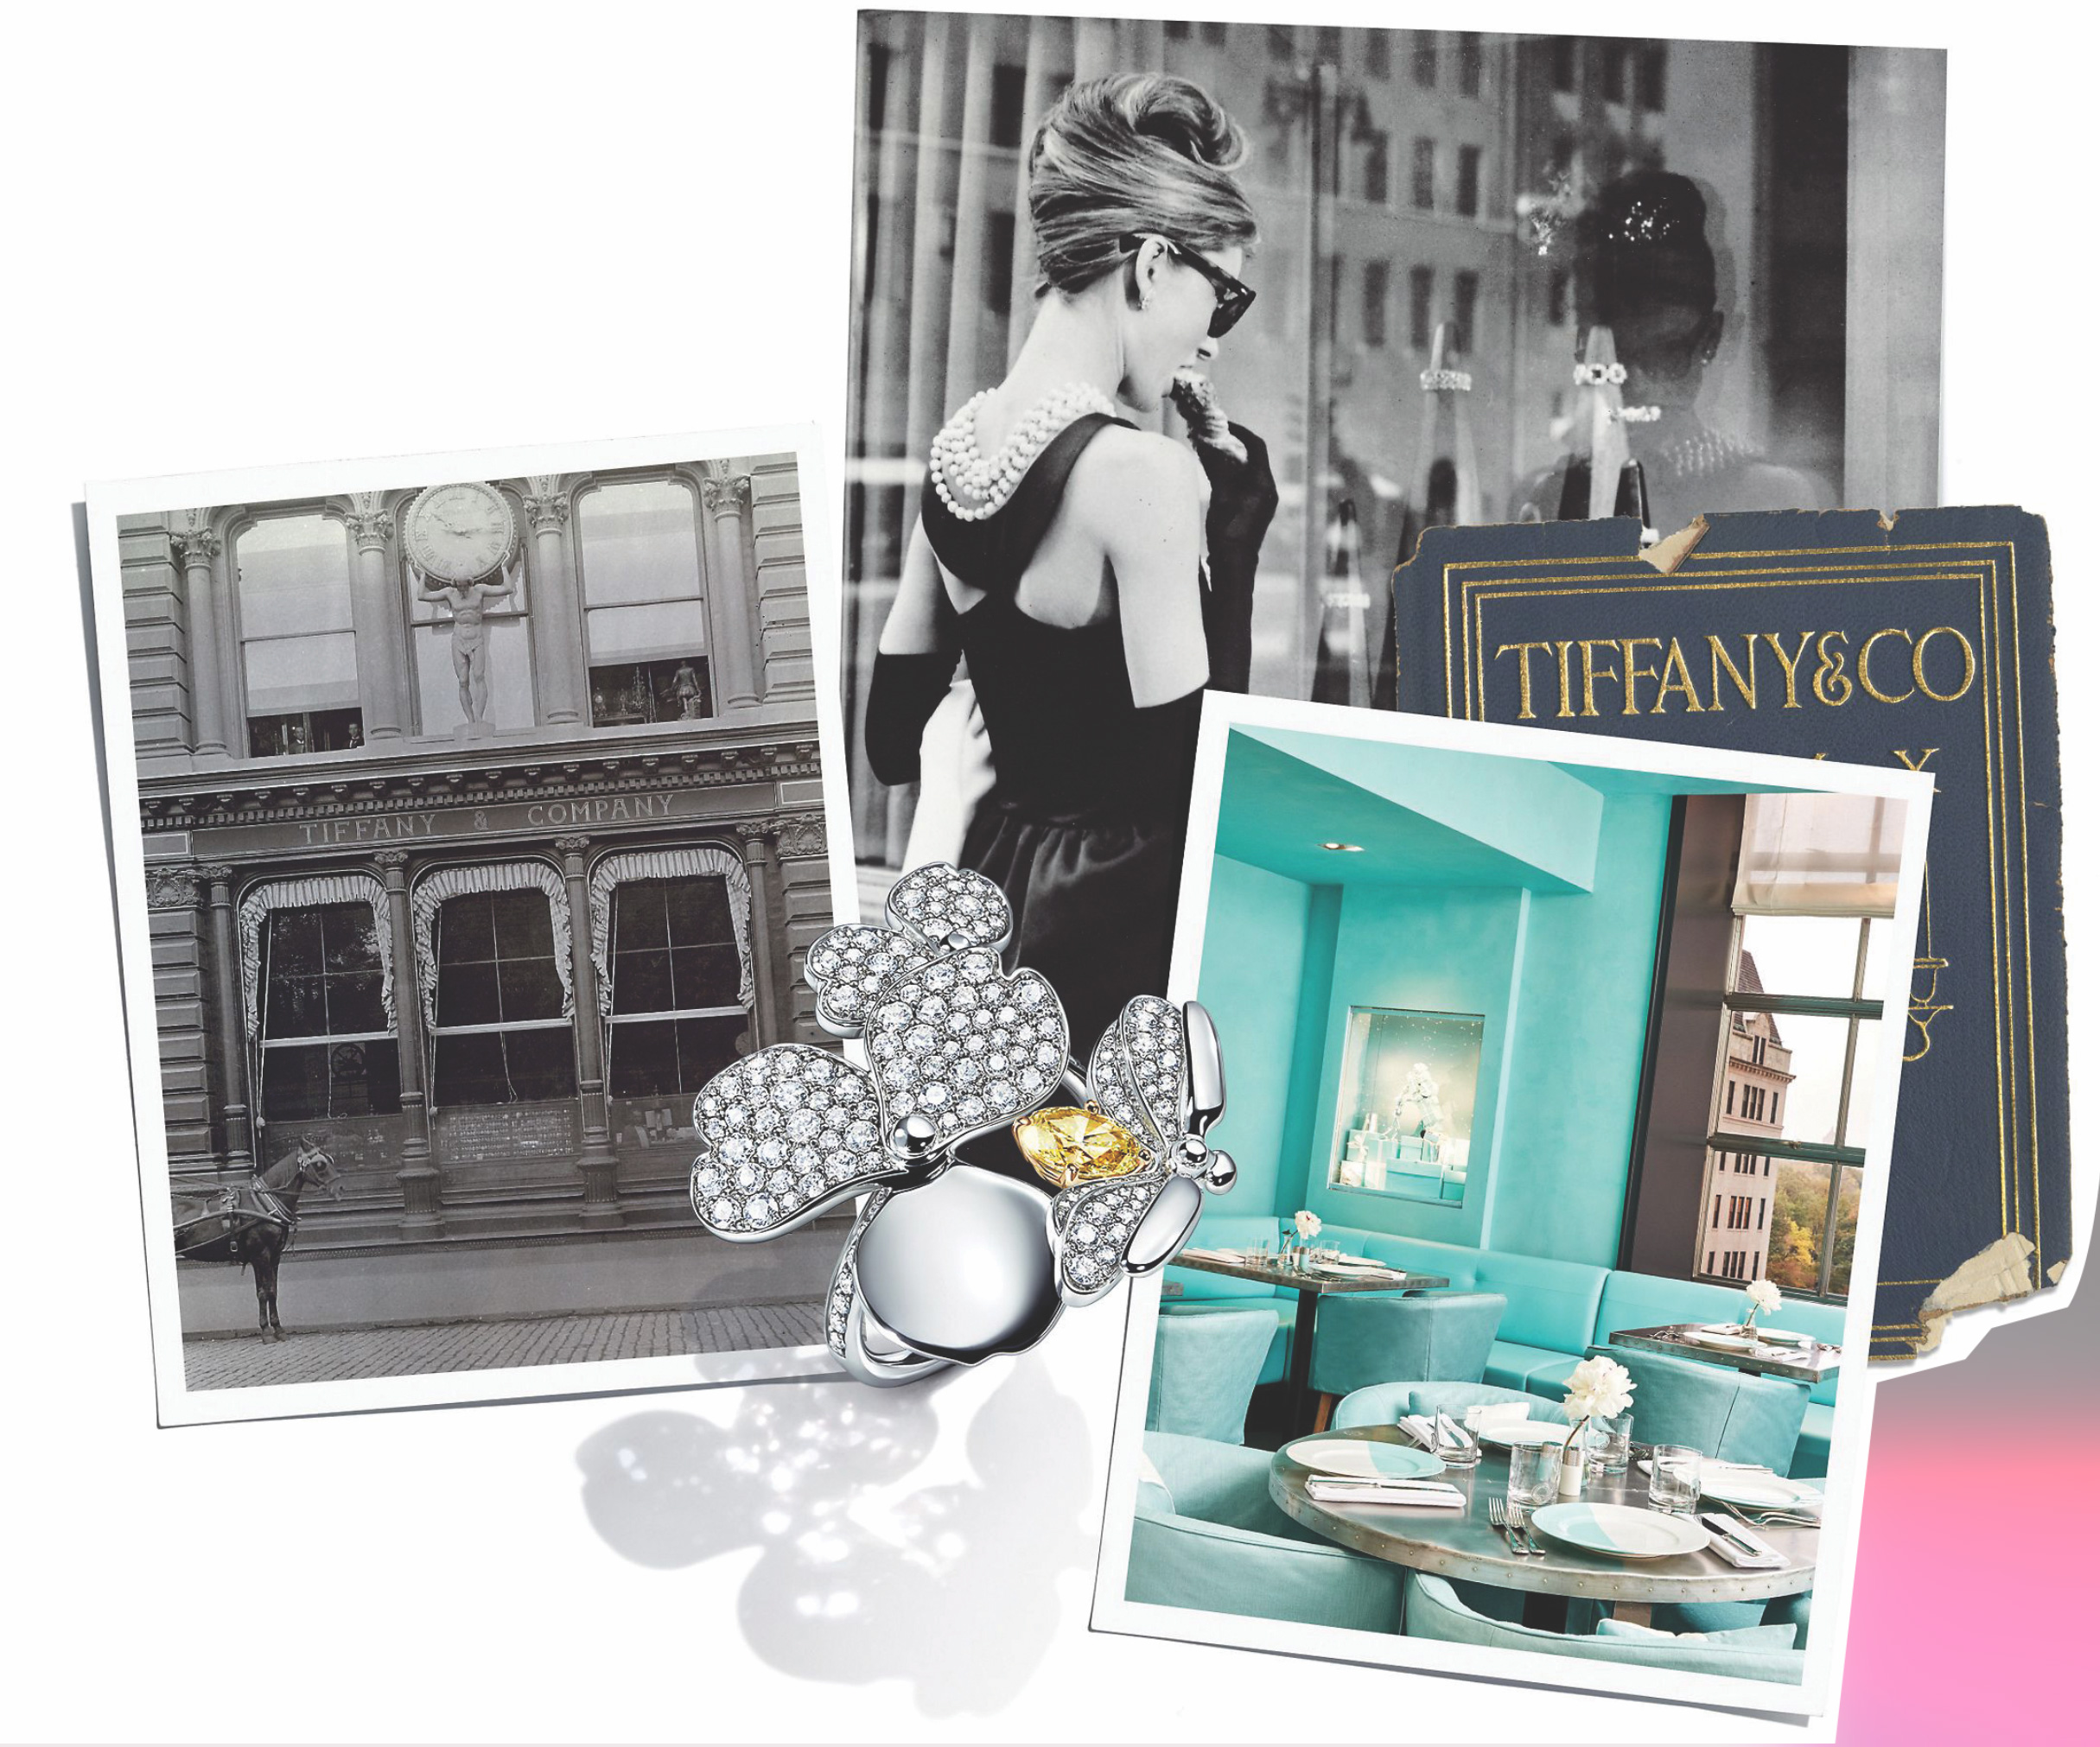 Marca del Mes: Tiffany & Co., el lujo hecho joya